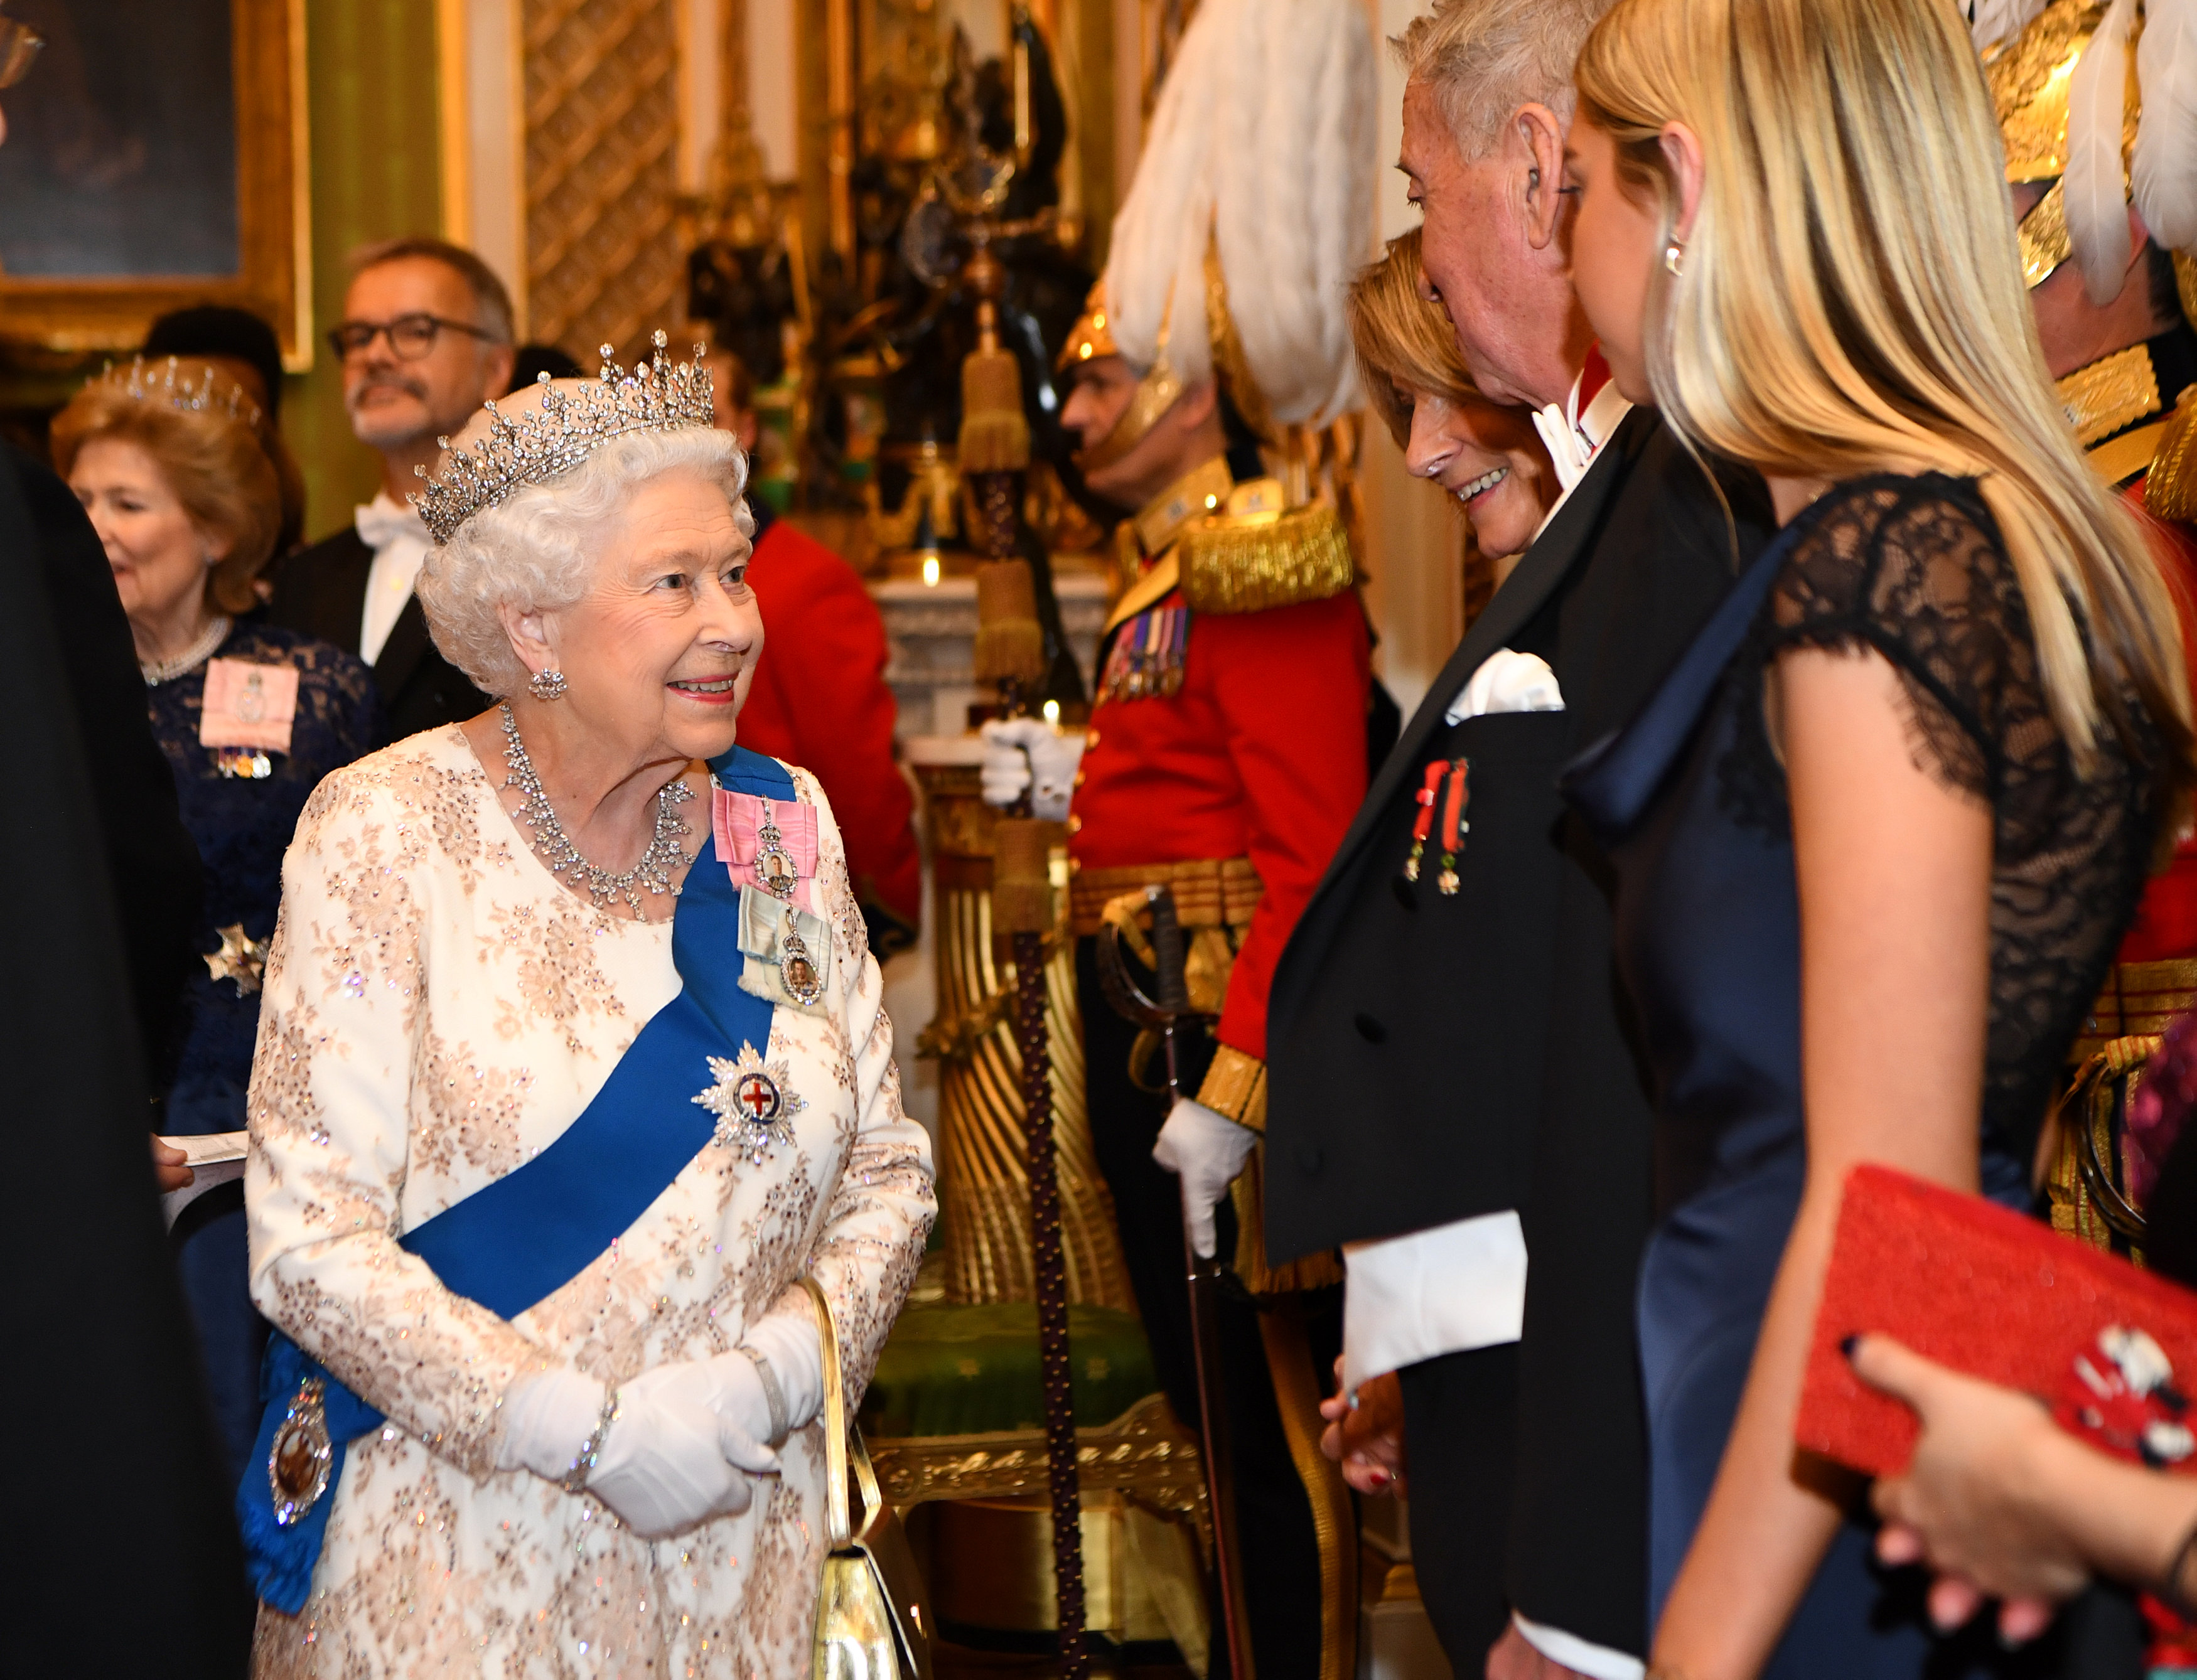 الملكة إليزابيث فى حوار مع أحد الدبلوماسيين